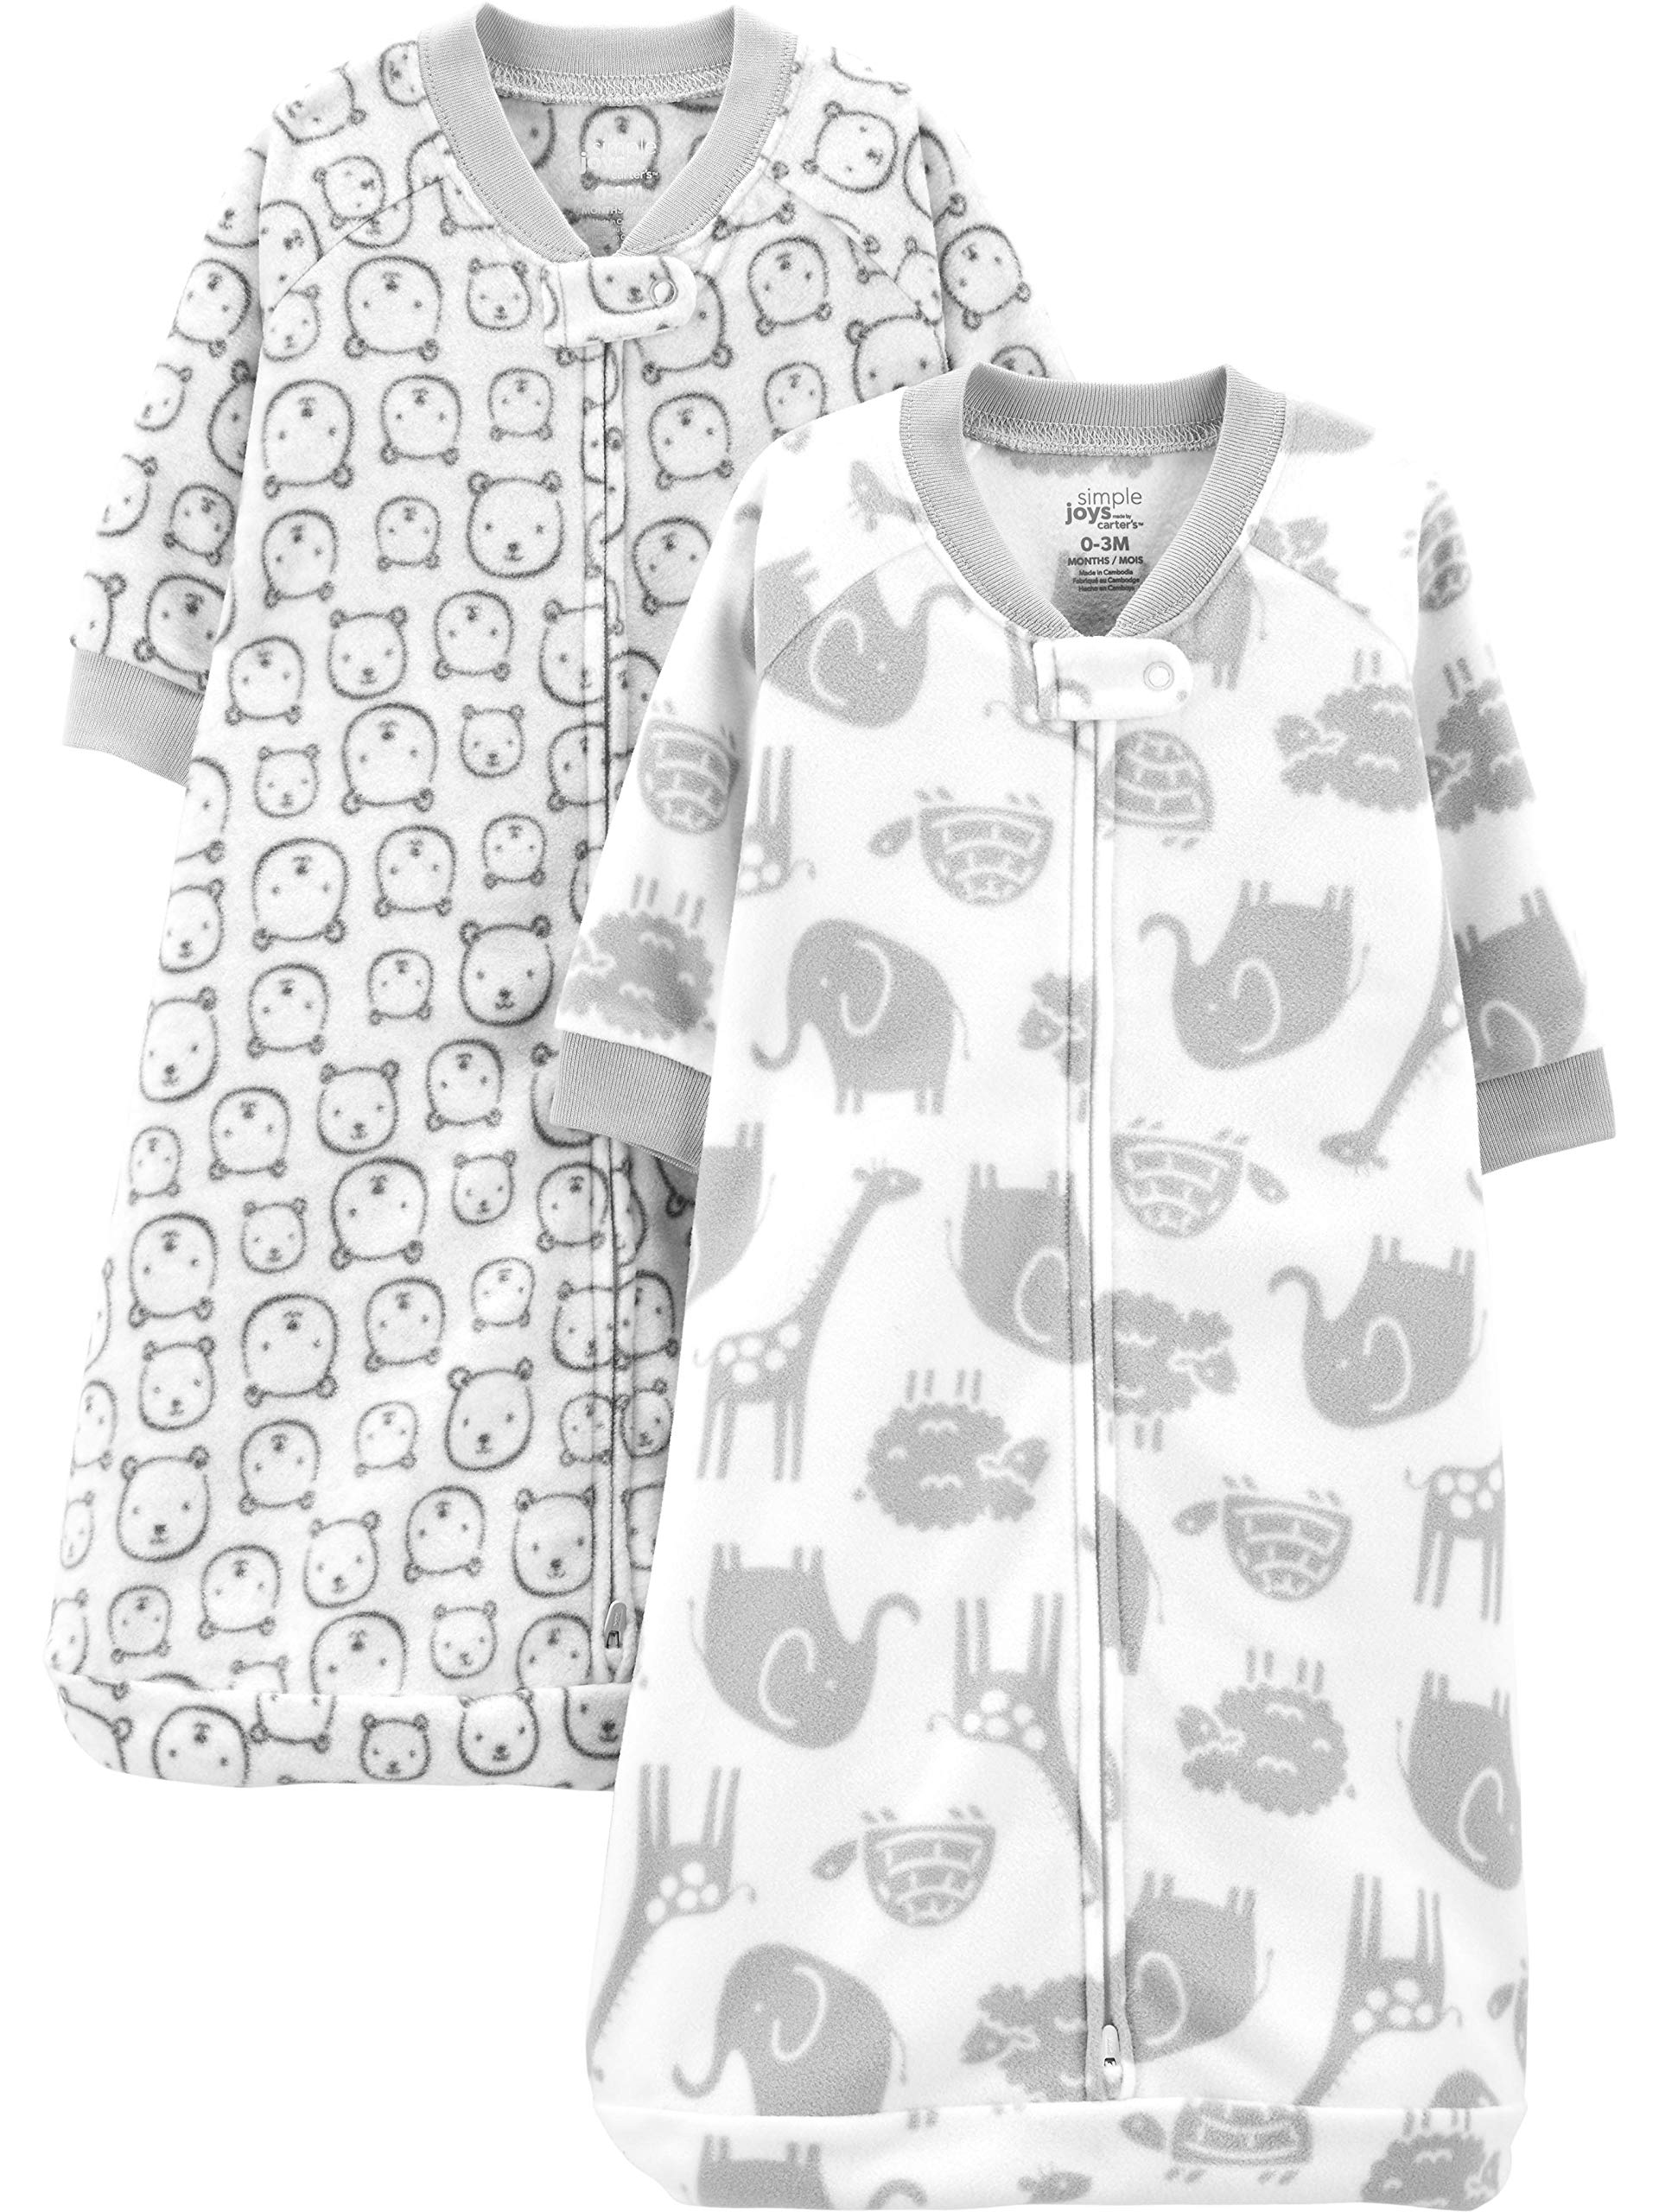 Simple Joys by Carter's Unisex Babies' Microfleece Sleepbag Wearable Blanket, Pack of 2